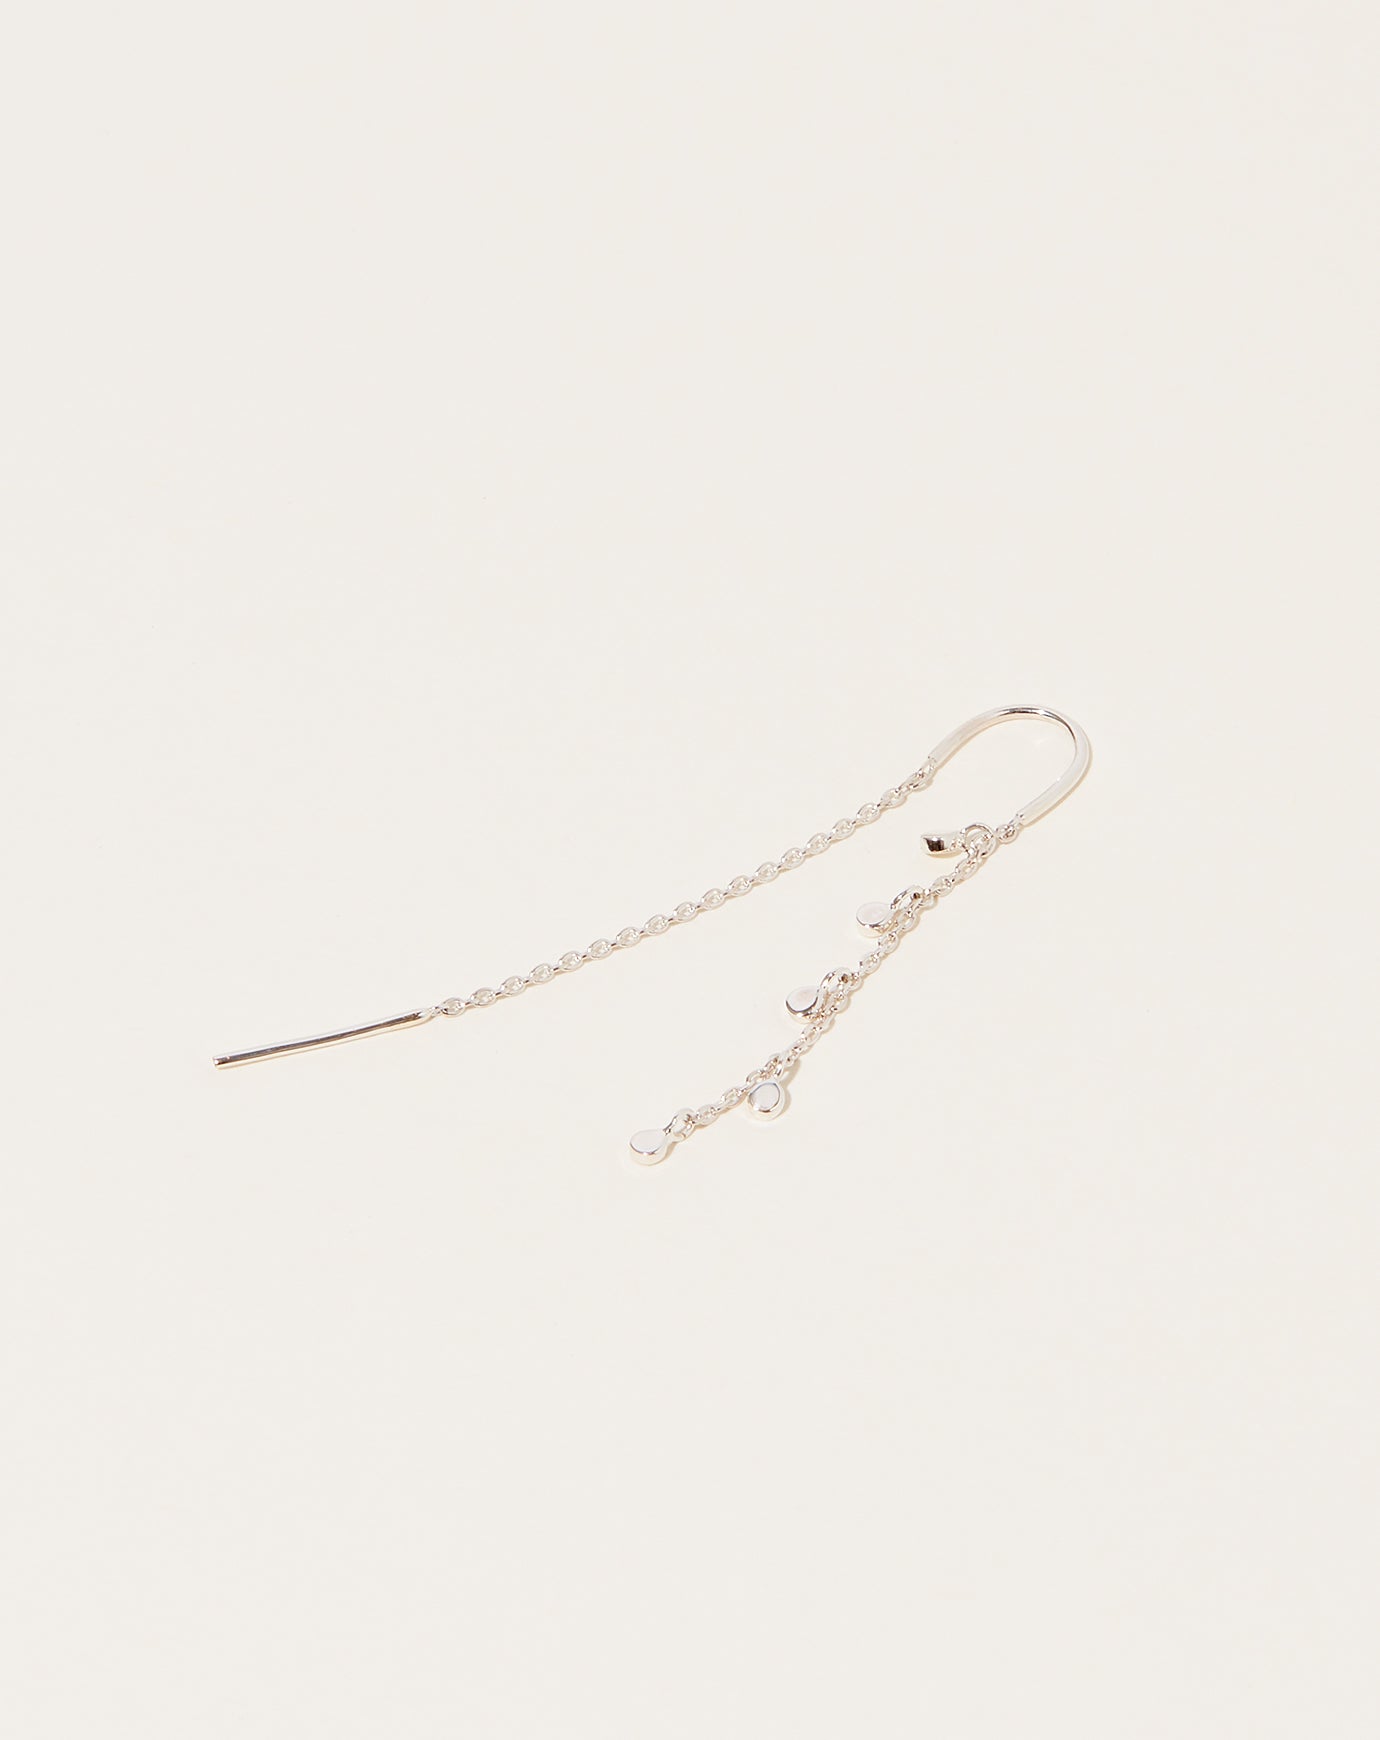 400Pcs Clear Earrings – KMEOSCH Jewelry